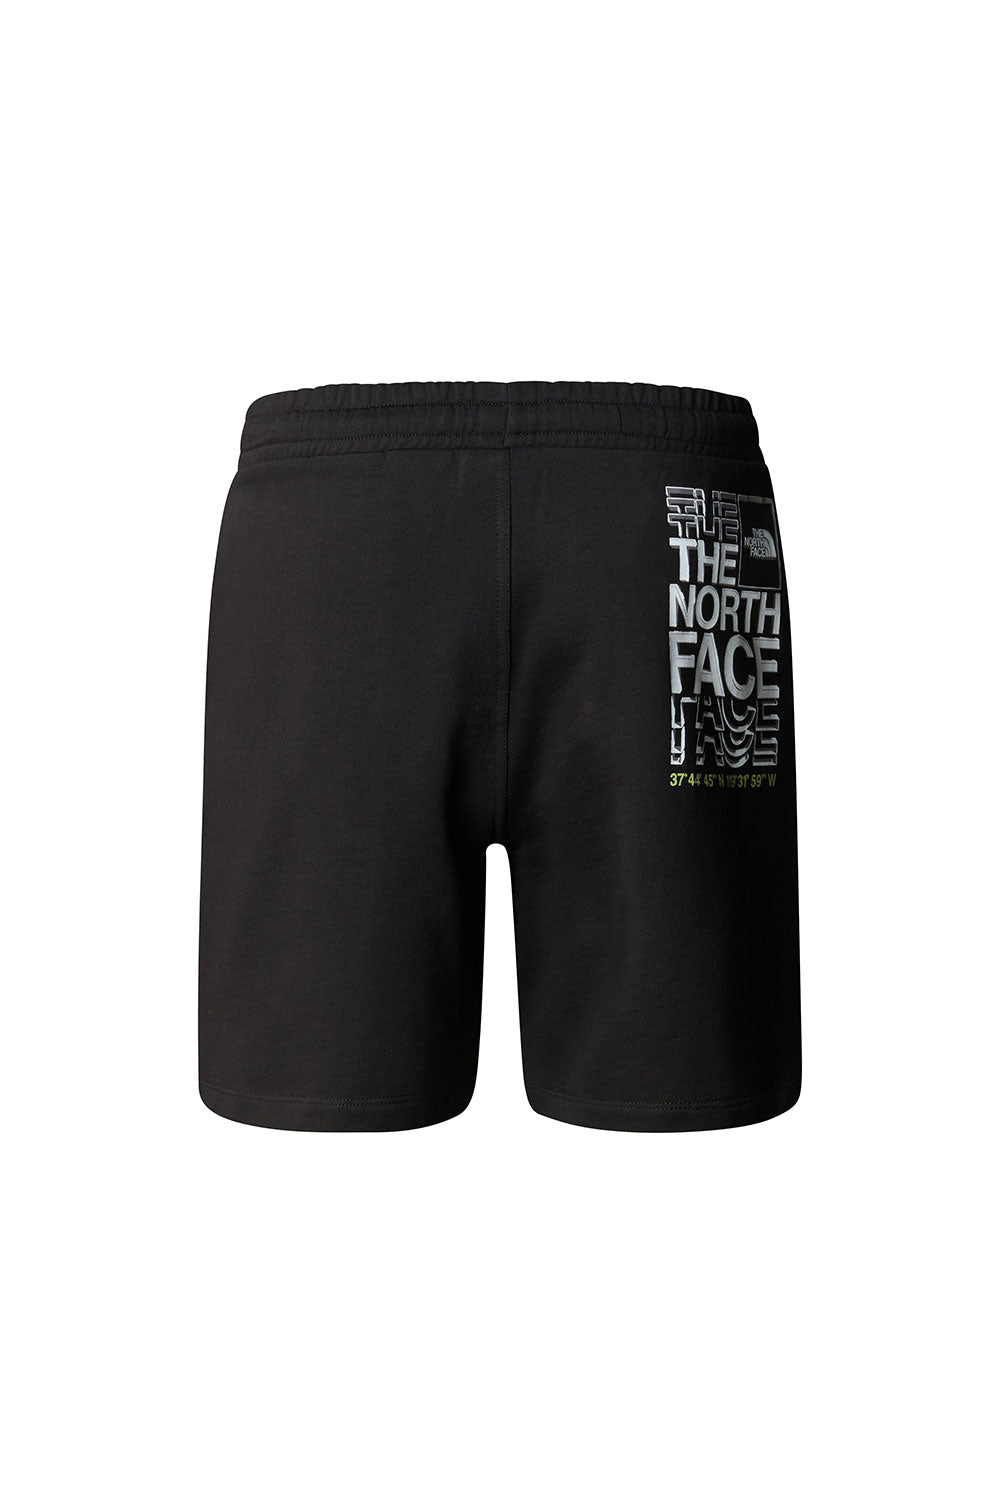 דה נורת' פייס מכנסיים קצרים Coordinates בצבע שחור לגברים-The North Face-XS-נאקו